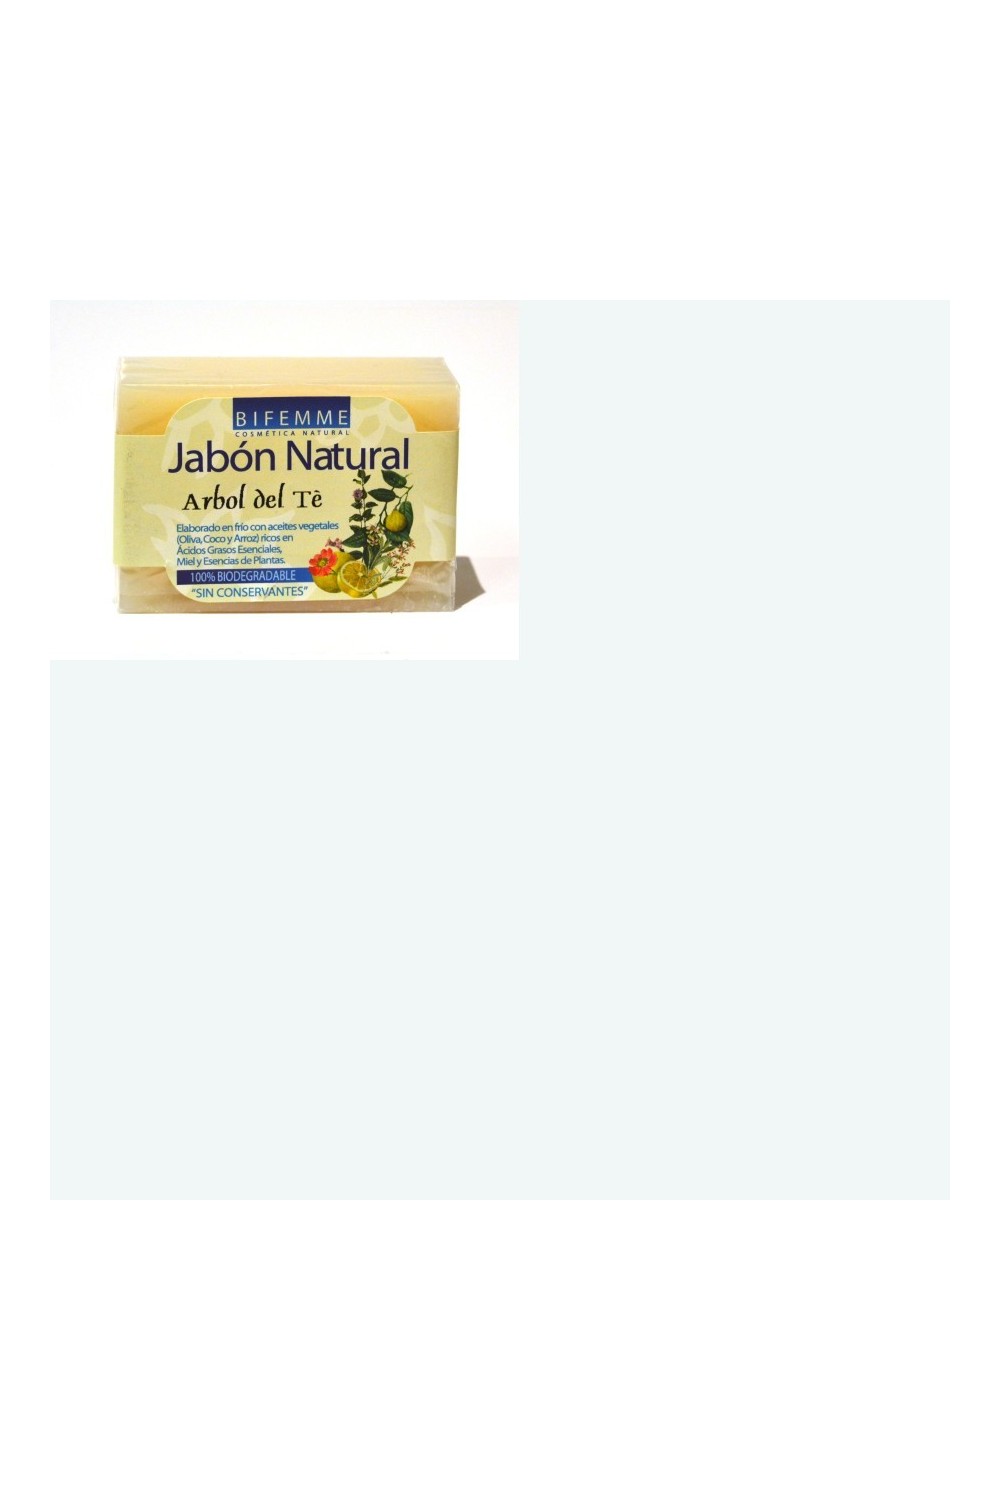 Ynsadiet Jabon Tee Tree Oil 100g Bifemme